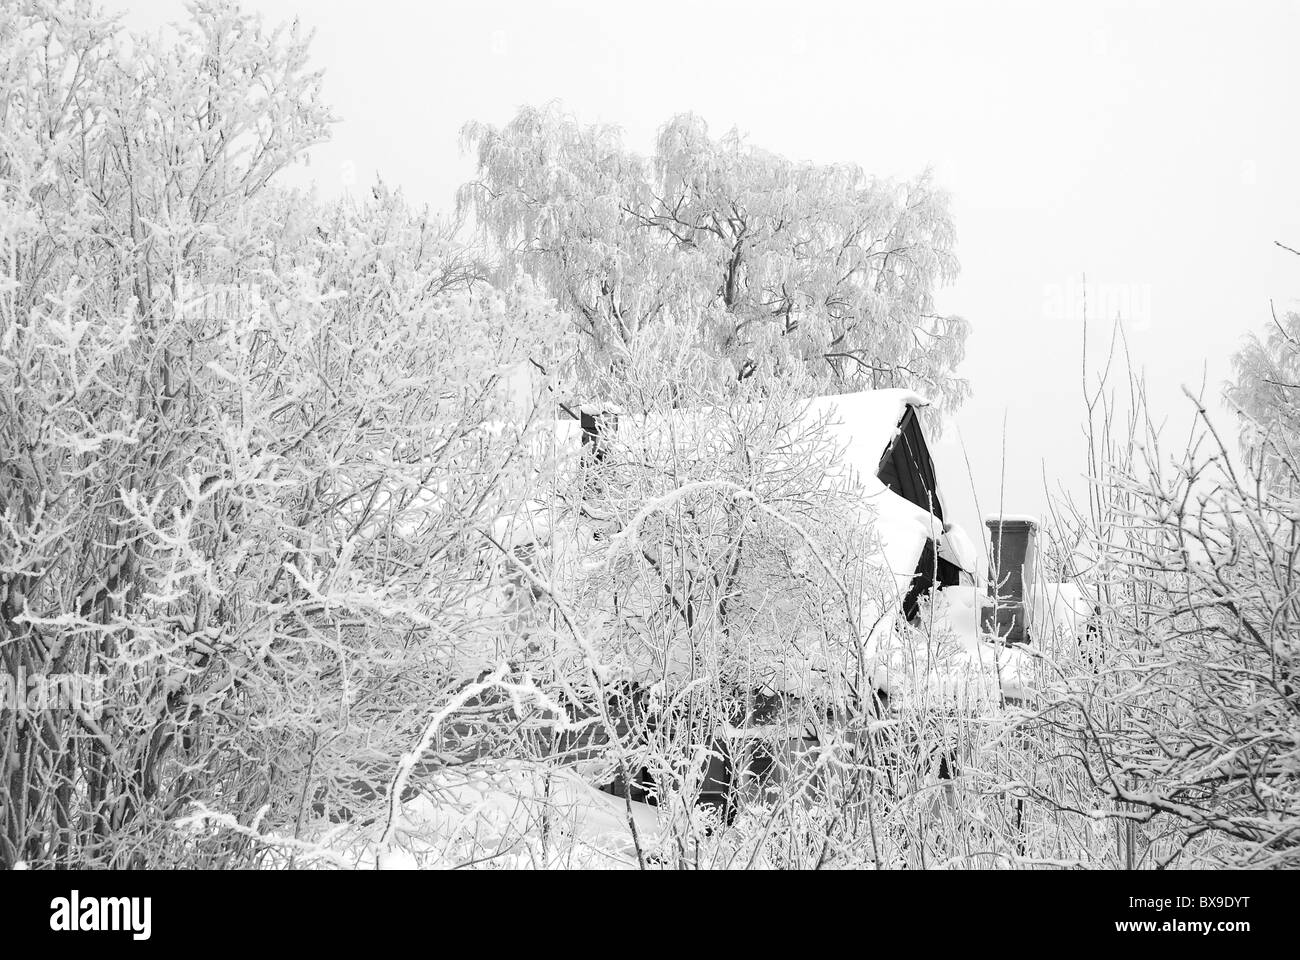 Protokolle-Hauses in einem Wintergarten unter Bäumen in einem Raureif gemacht Stockfoto